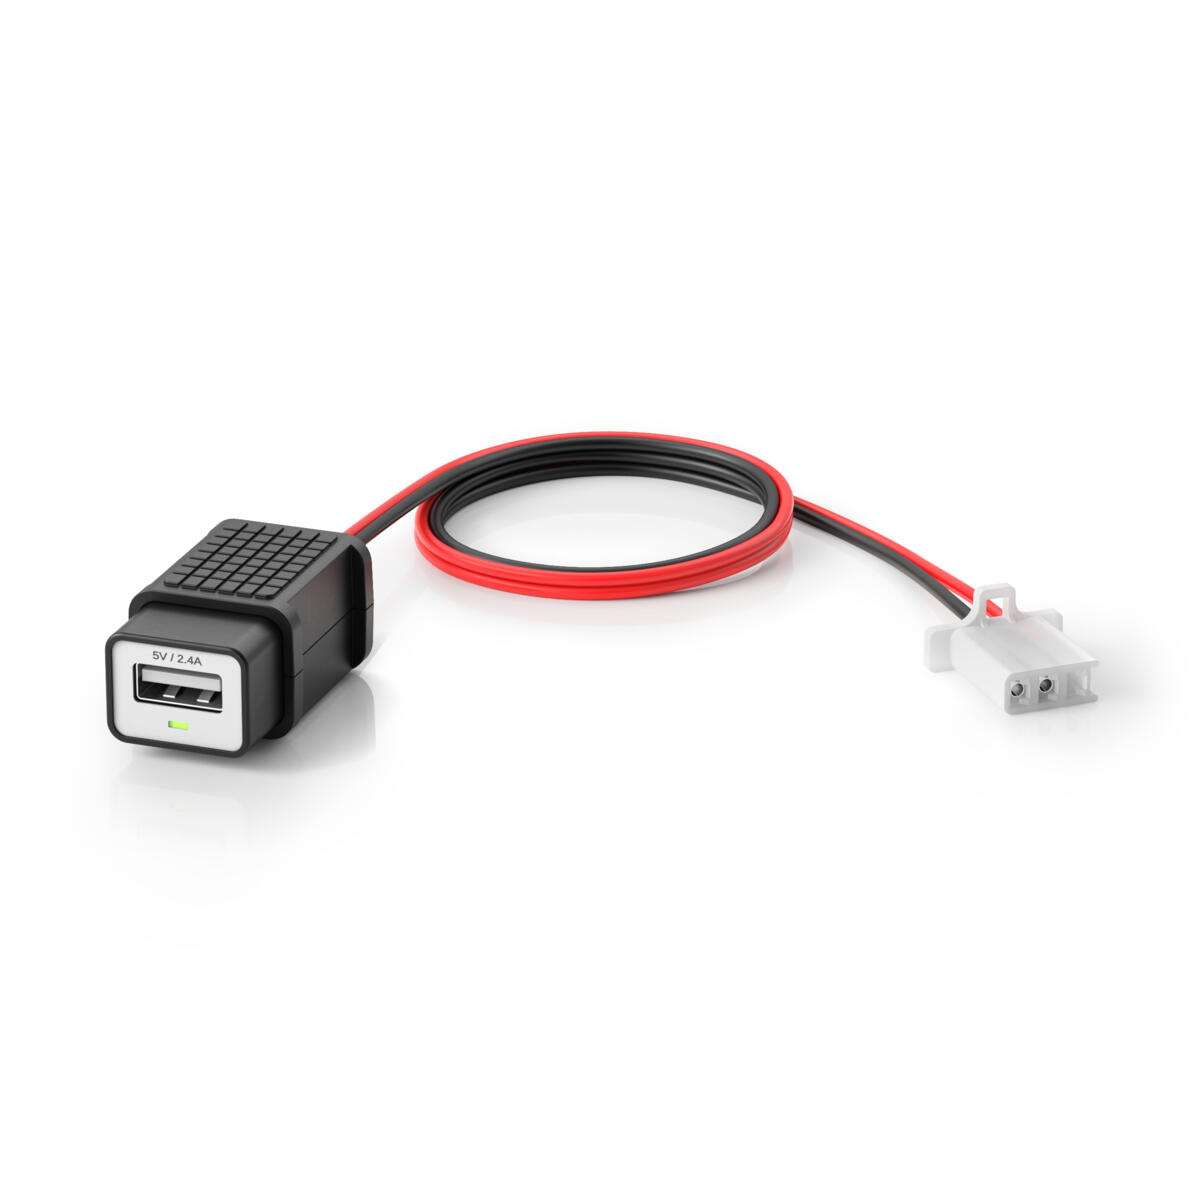 USB 5 V uttakssett for pre-kablede enheter